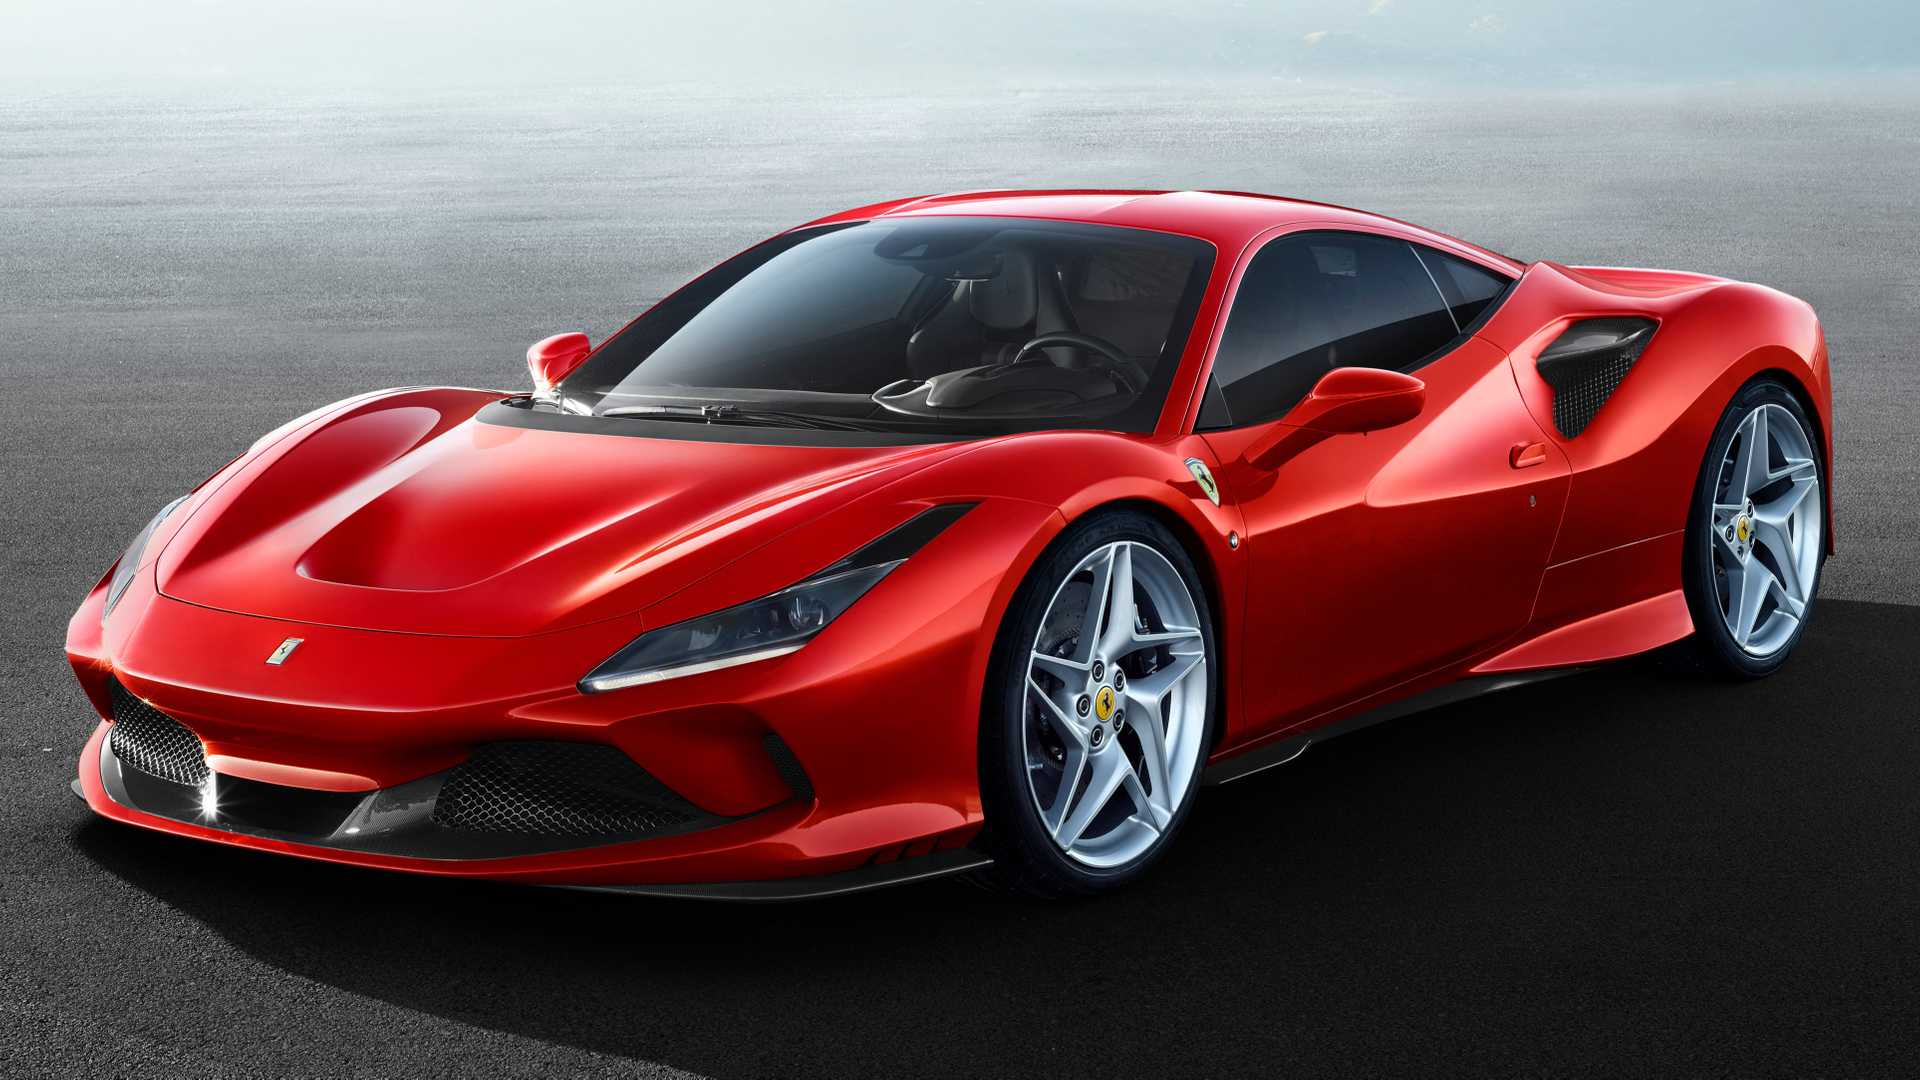 Mobil Mengerikan Terbaru Ferrari Bakal Segera Debut